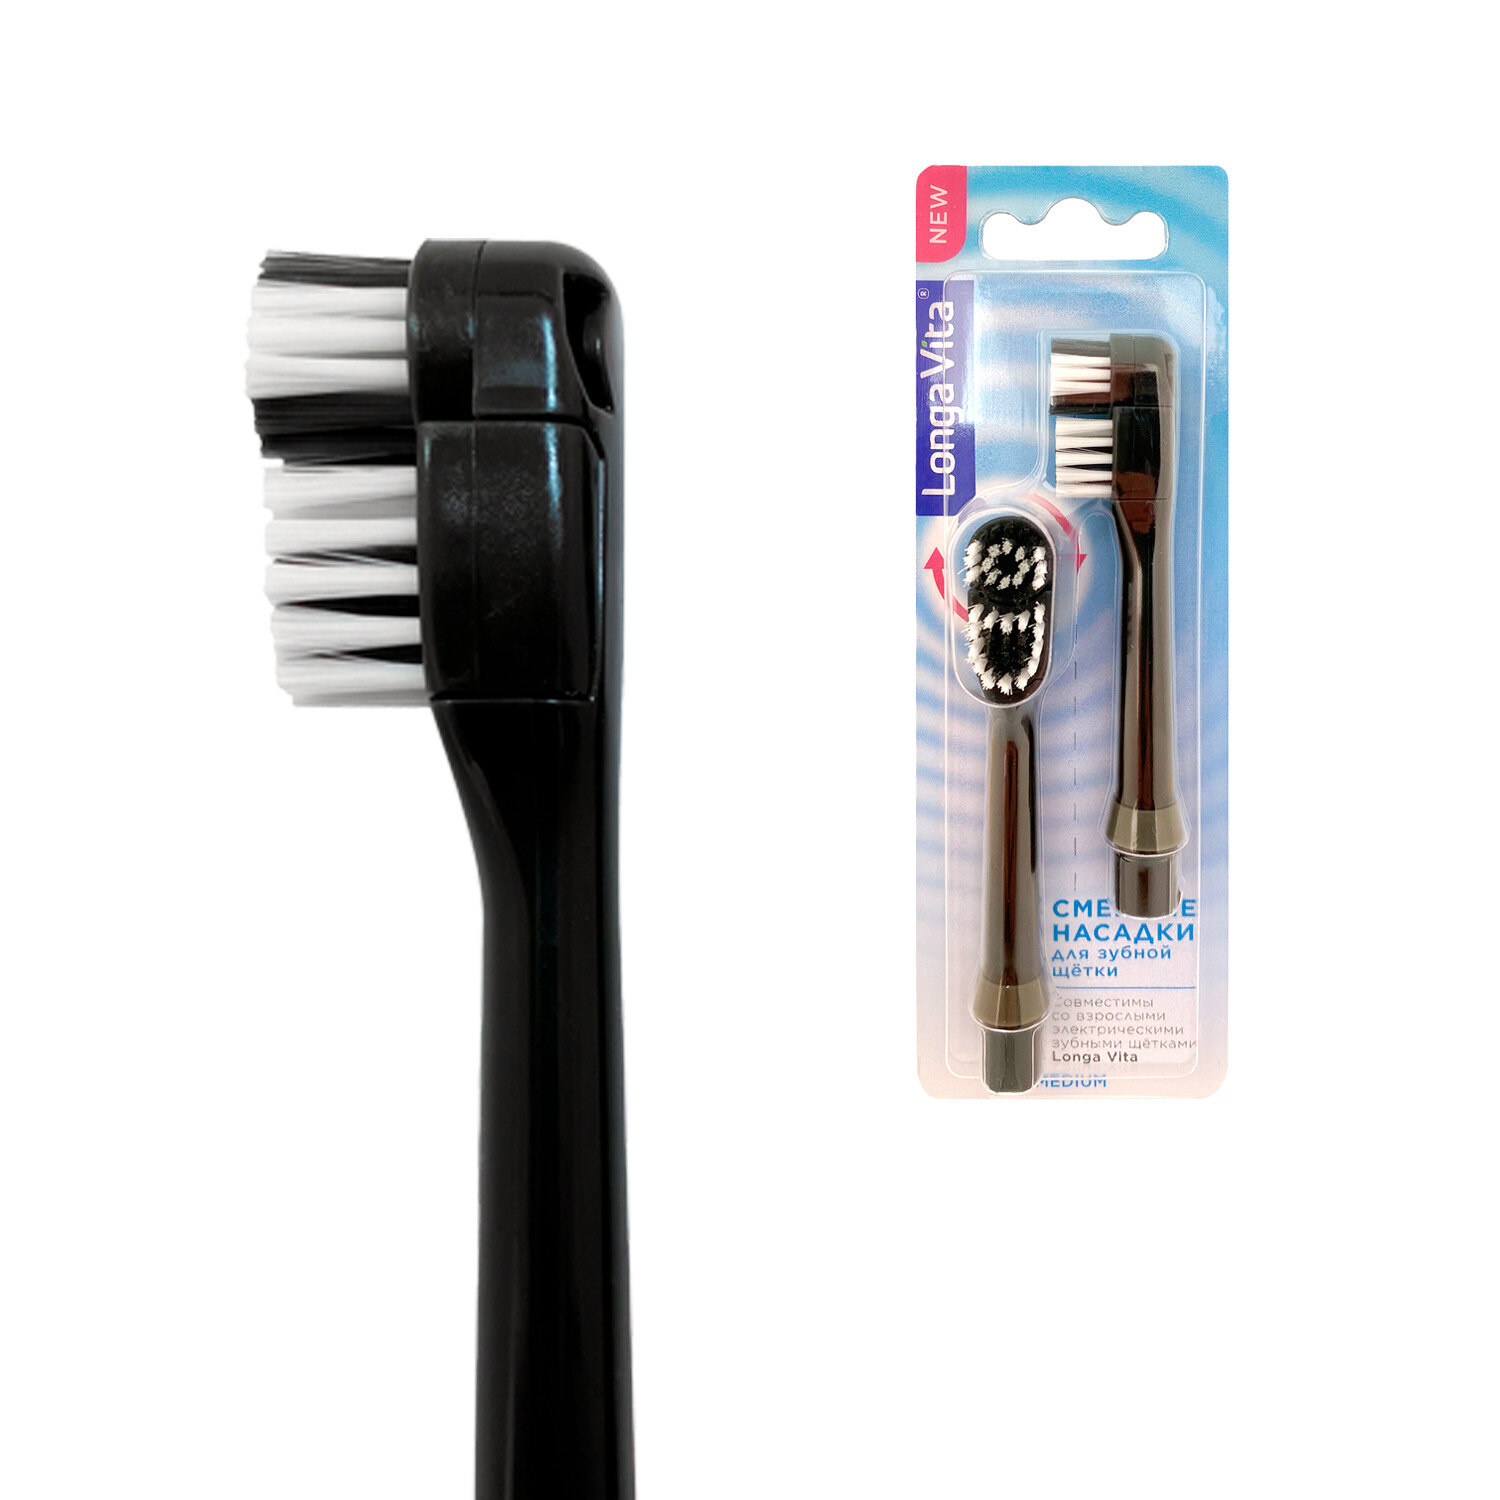 Насадки сменные для электрической зубной щётки Longa Vita, щетина средней жёсткости, чёрная